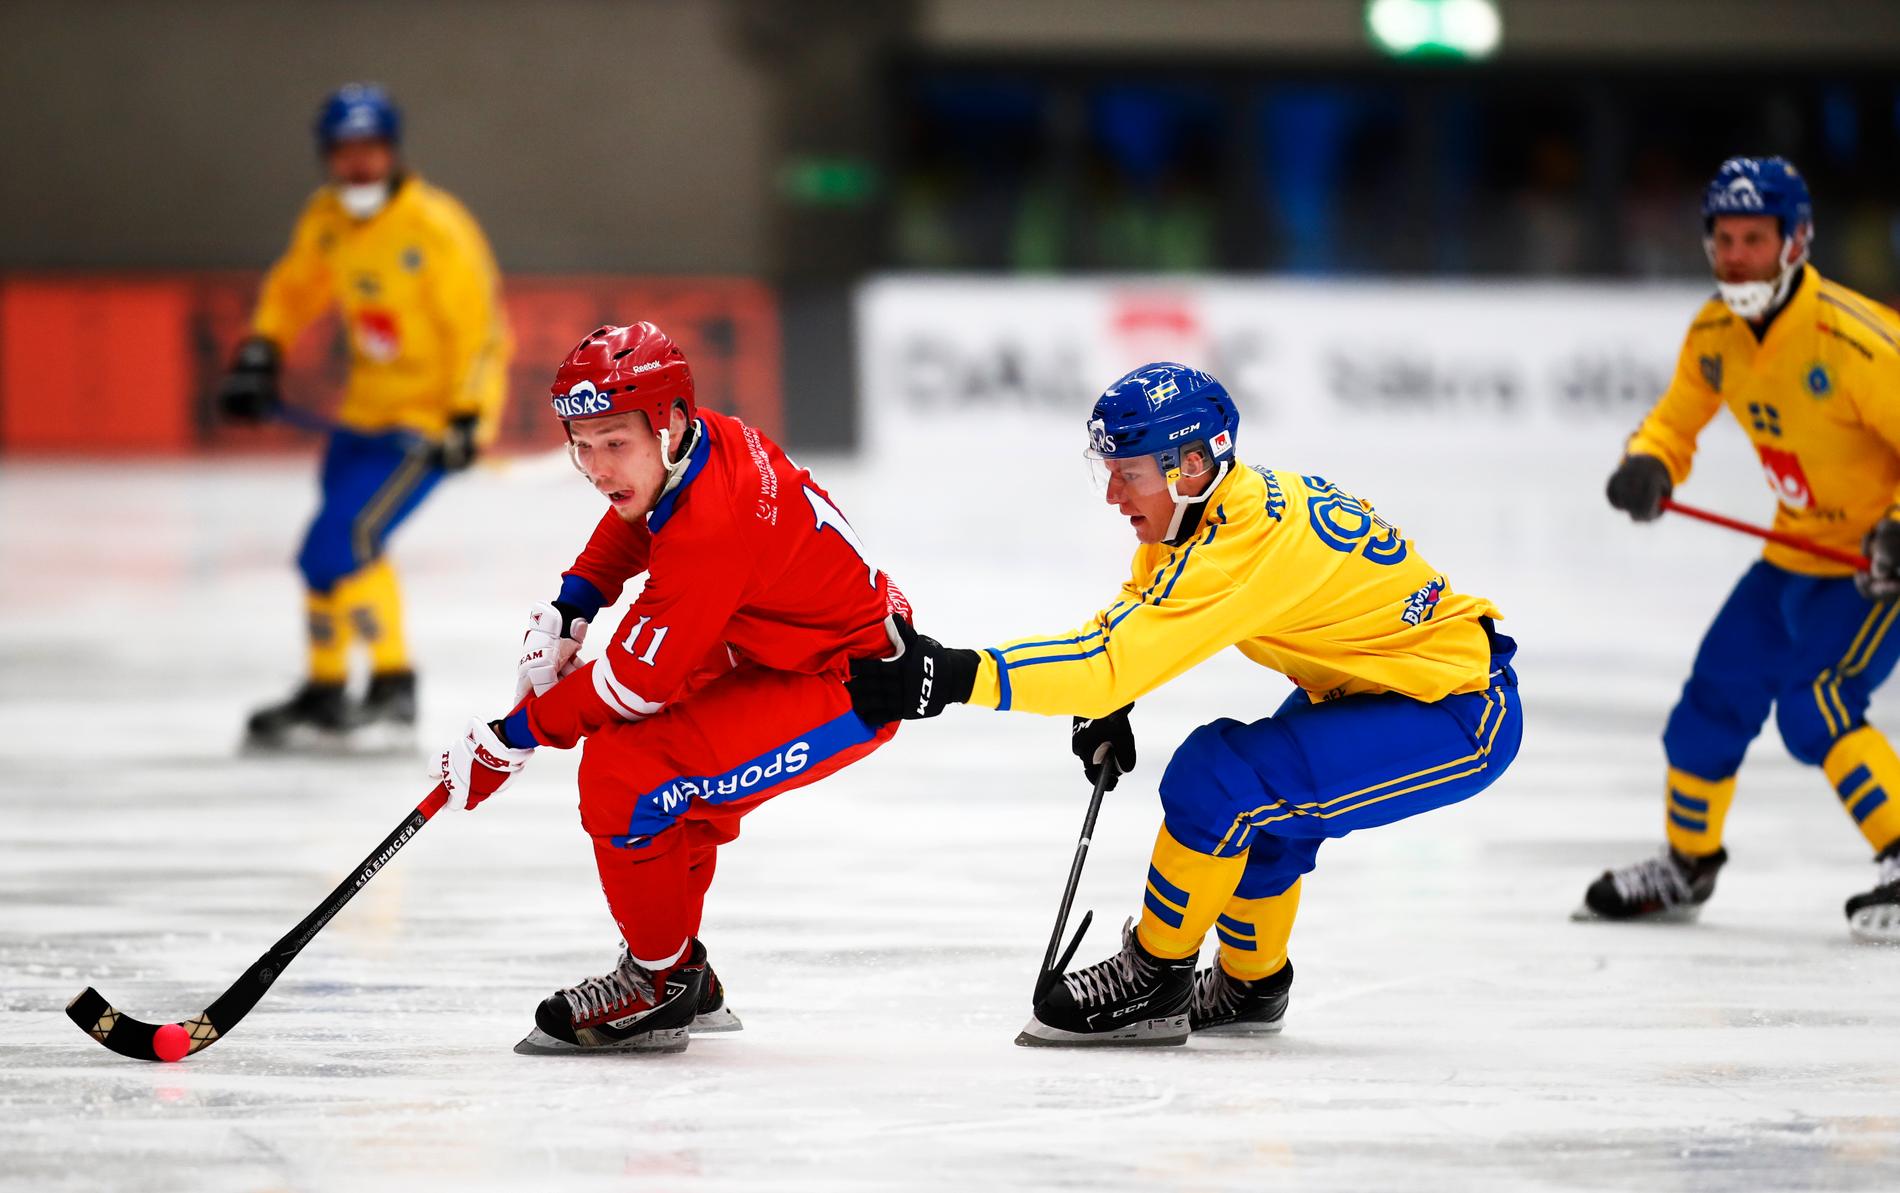 Erik Pettersson försöker stoppa ryske Vadim Chernov i bandy-VM:s premiärmatch i Vänersborg. Sverige vann med 6–4 mot Ryssland.